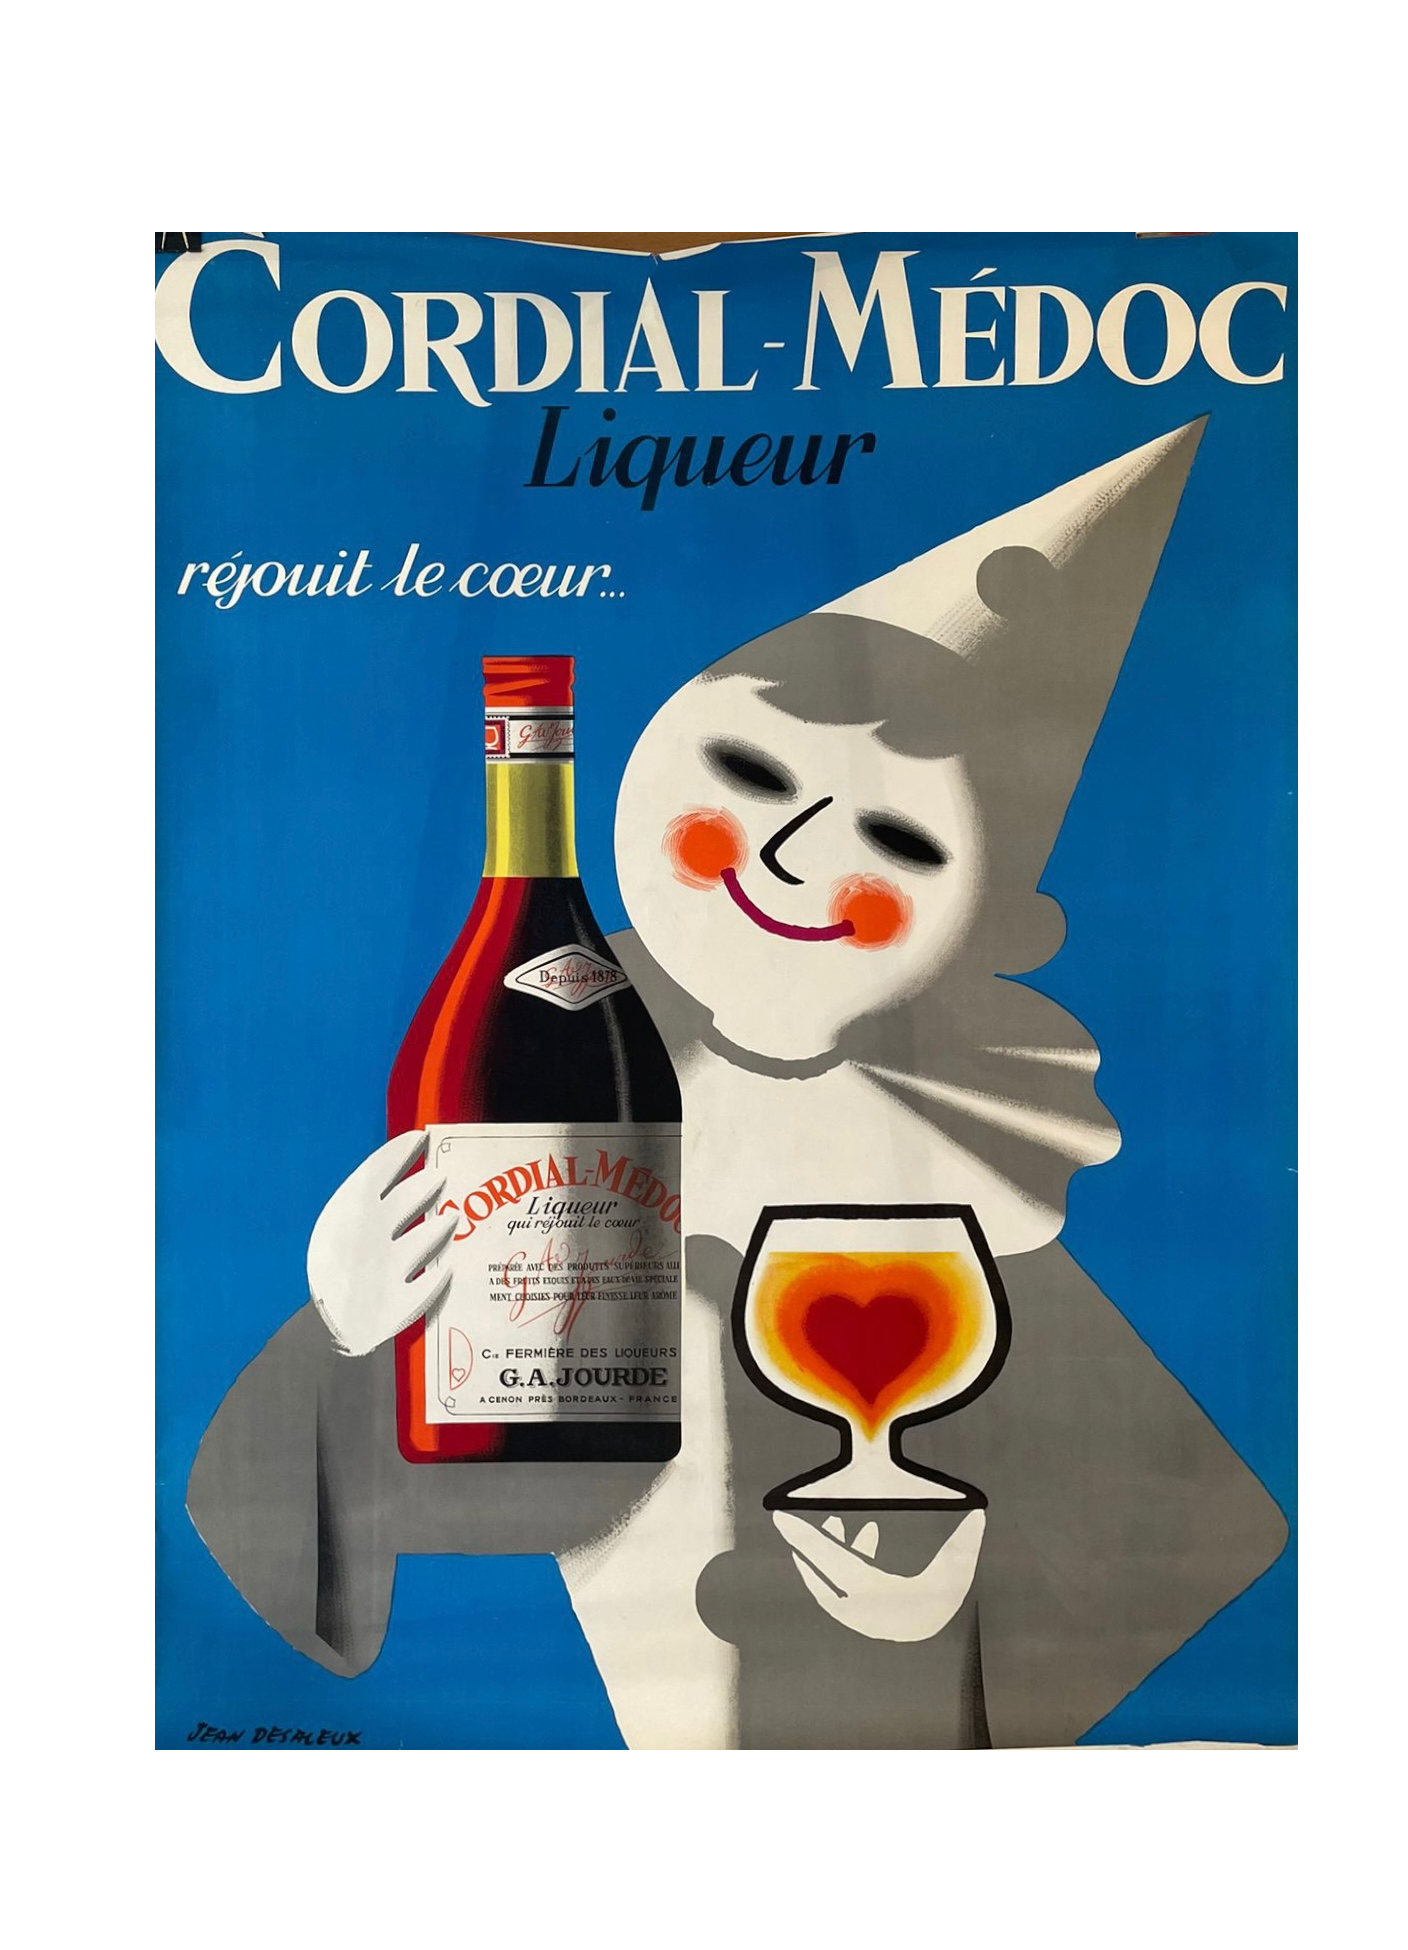 Cordial Medoc Liqueur by Jean Desaleux